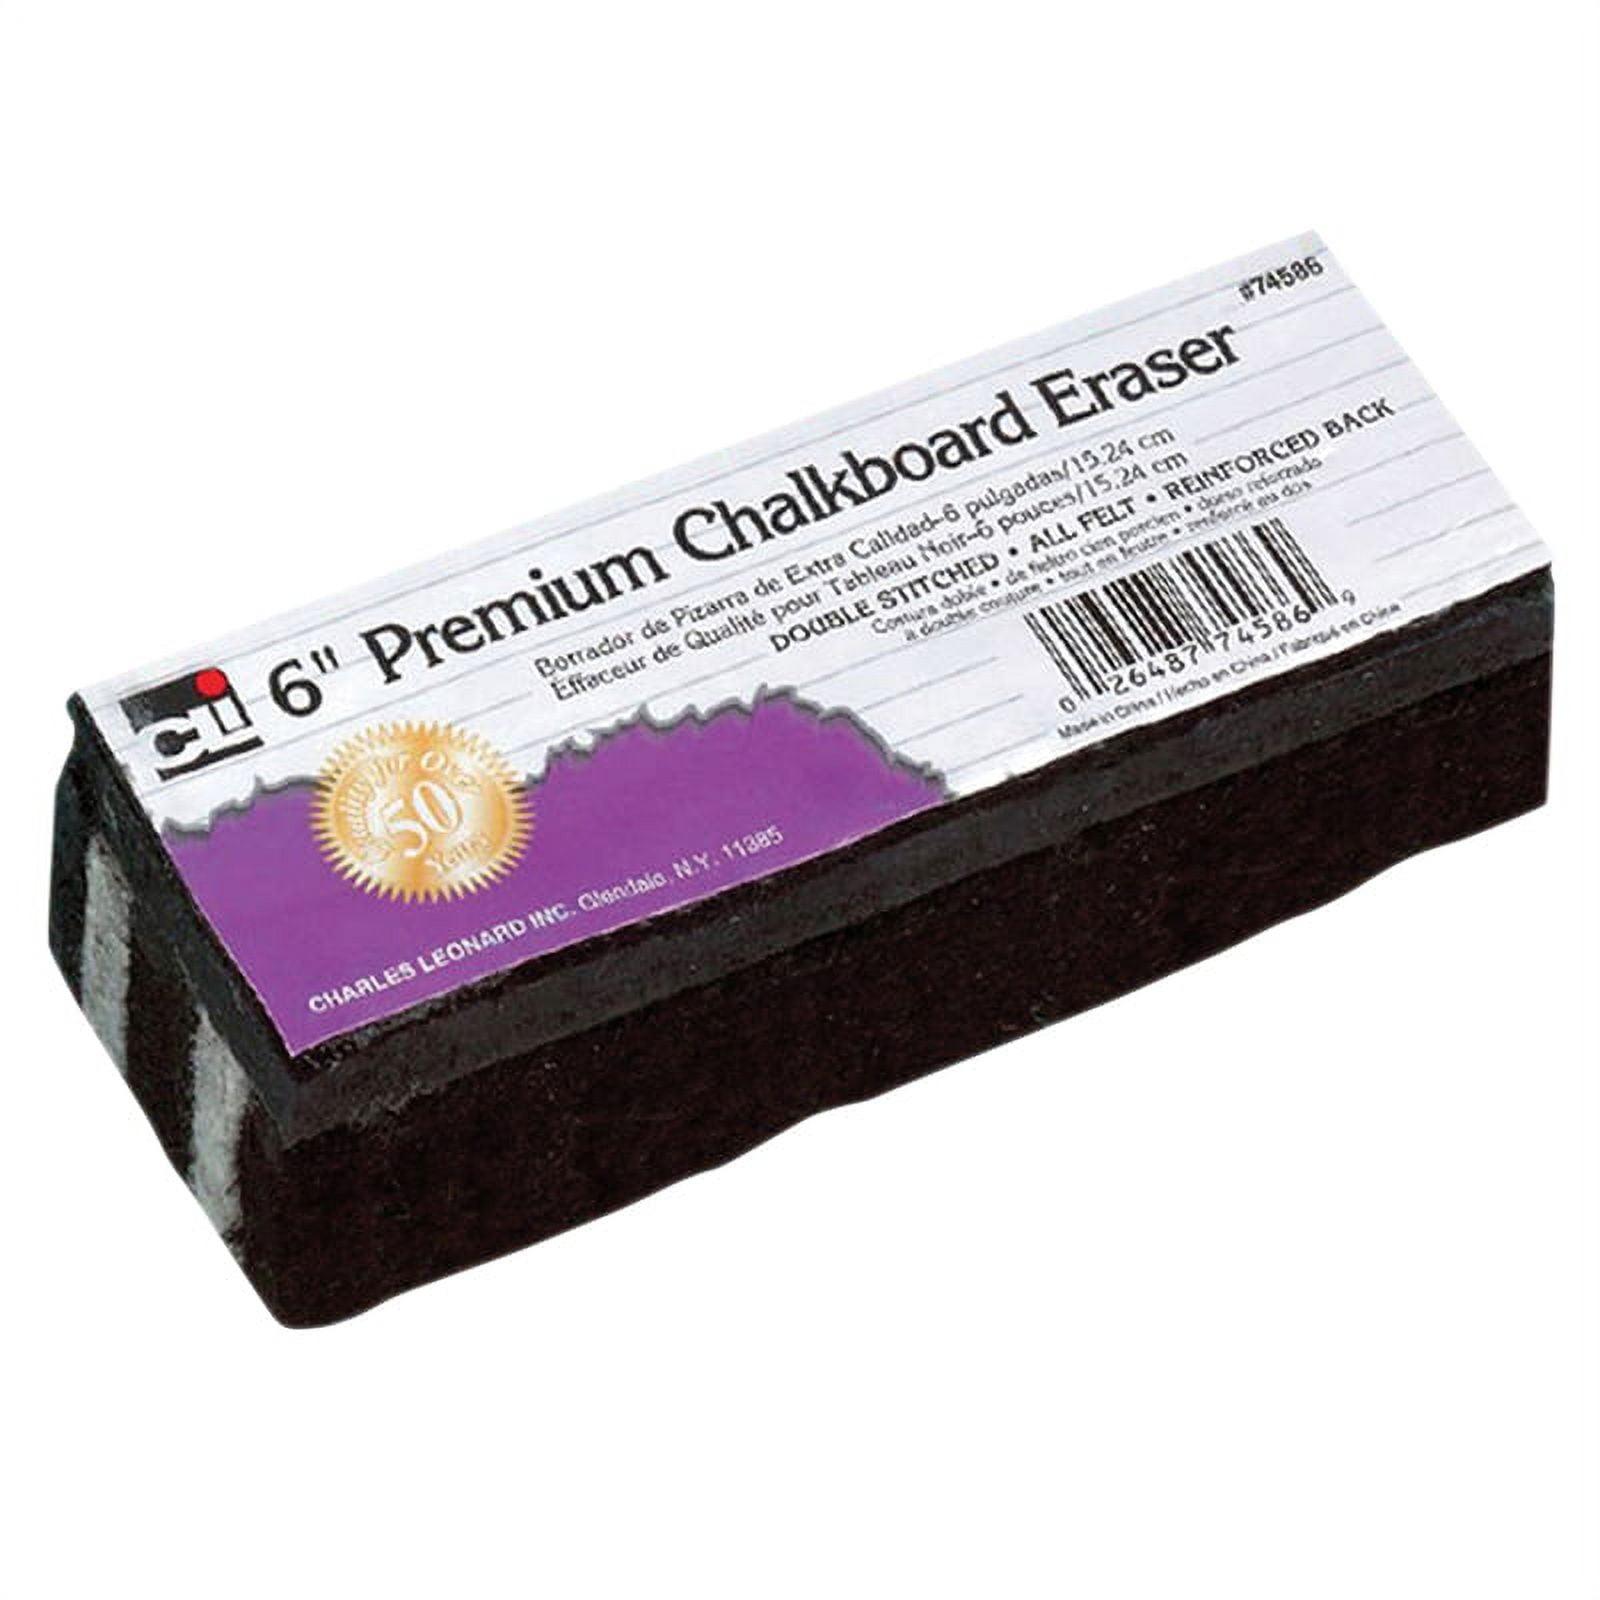  HXDISWSM 6 Pack Chalkboard Erasers Premium Wool Felt